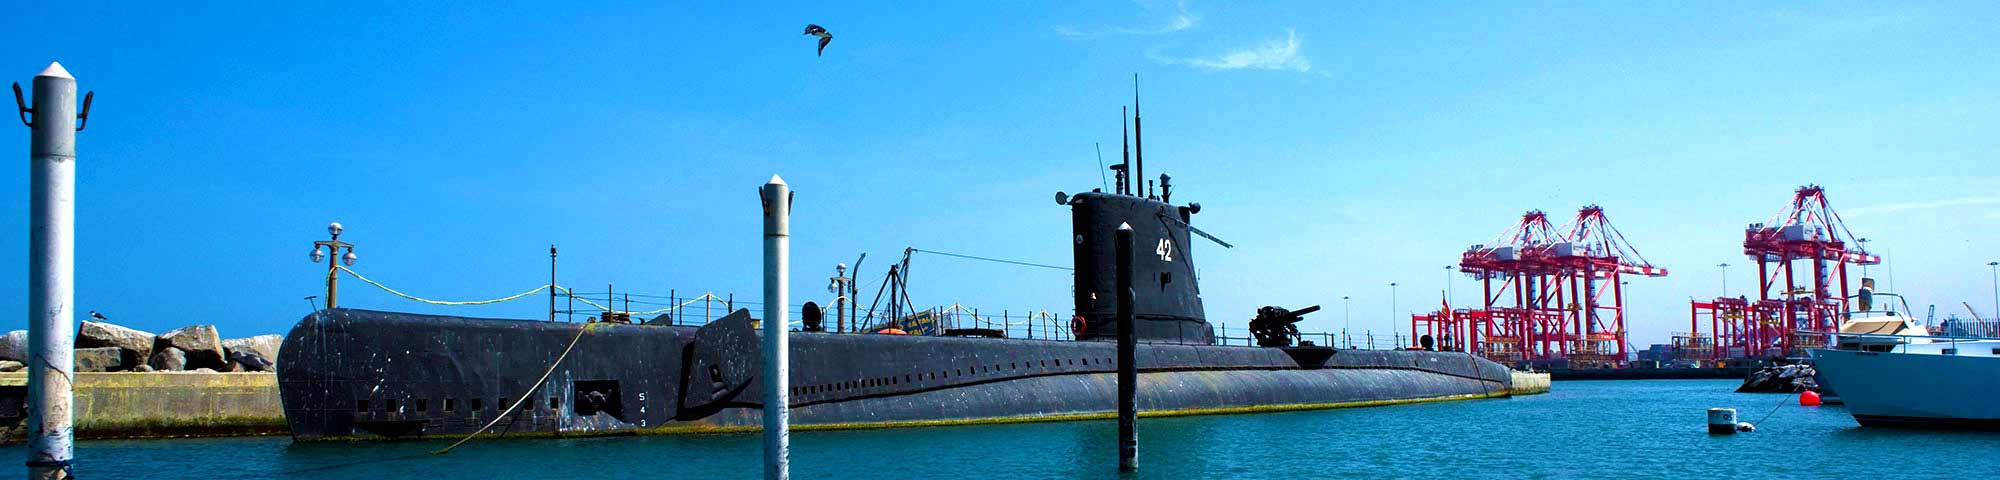 Museo de Sitio Naval Submarino Abtao